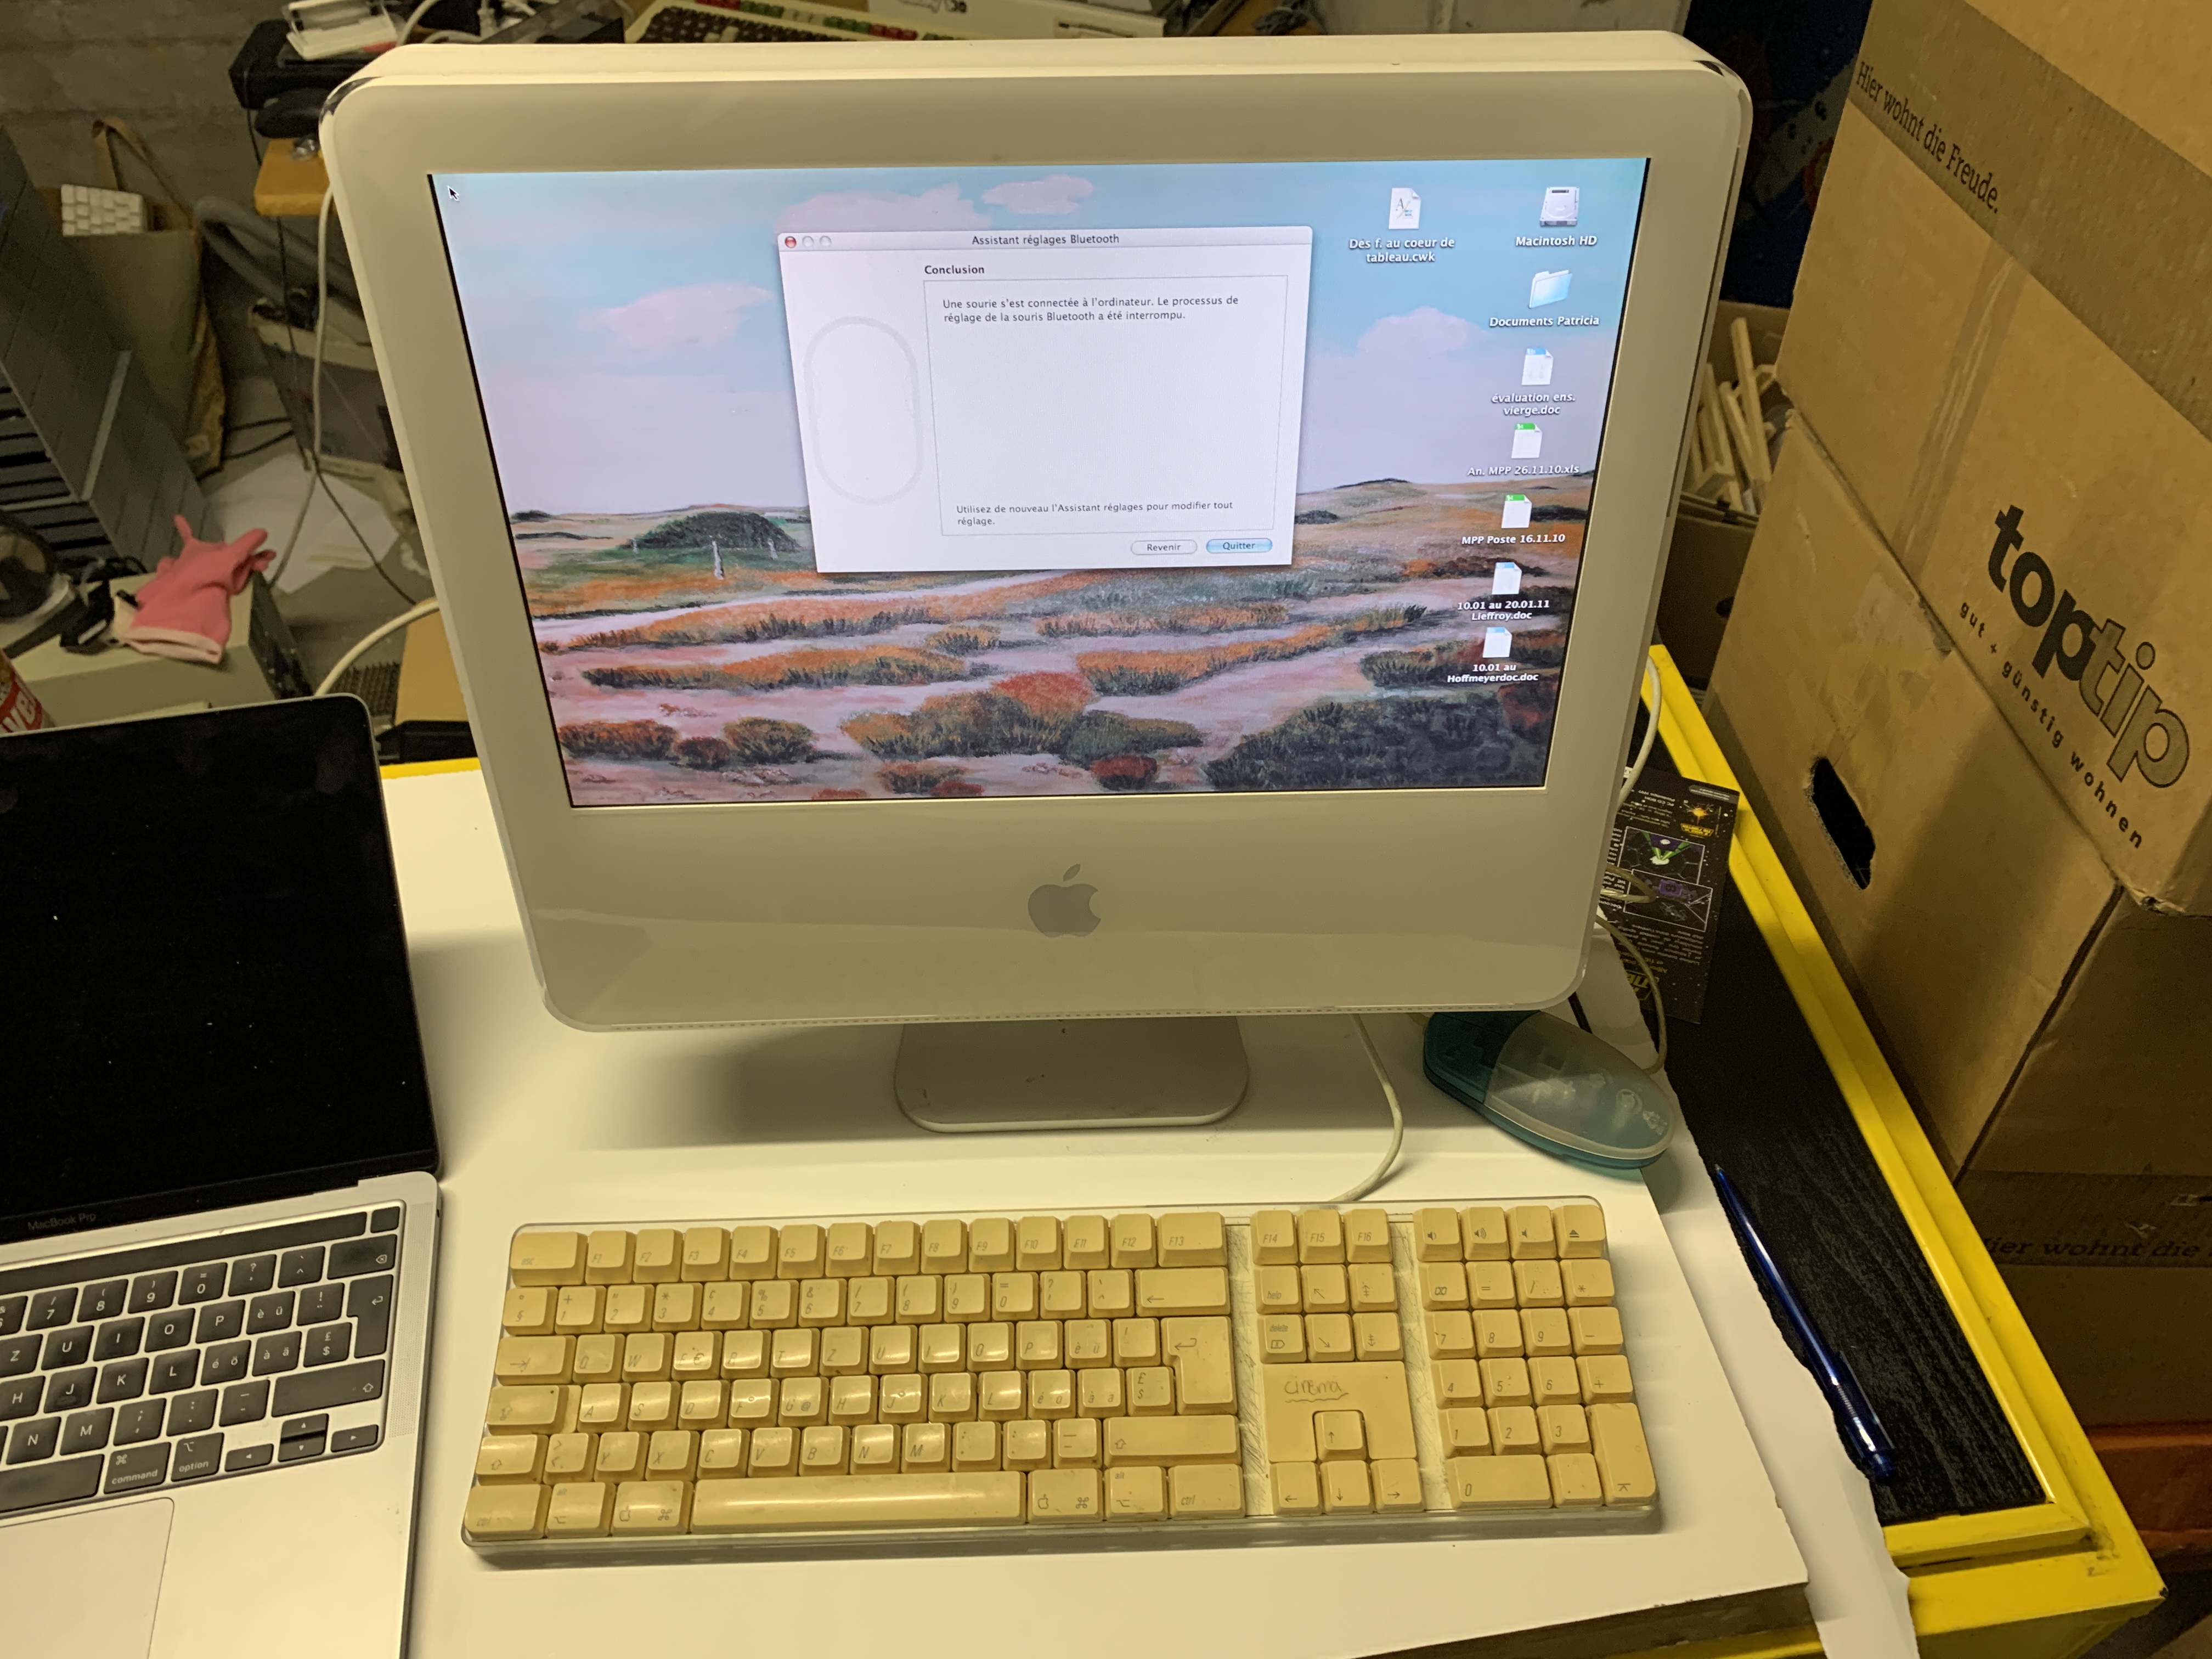 iMac G5 A1058